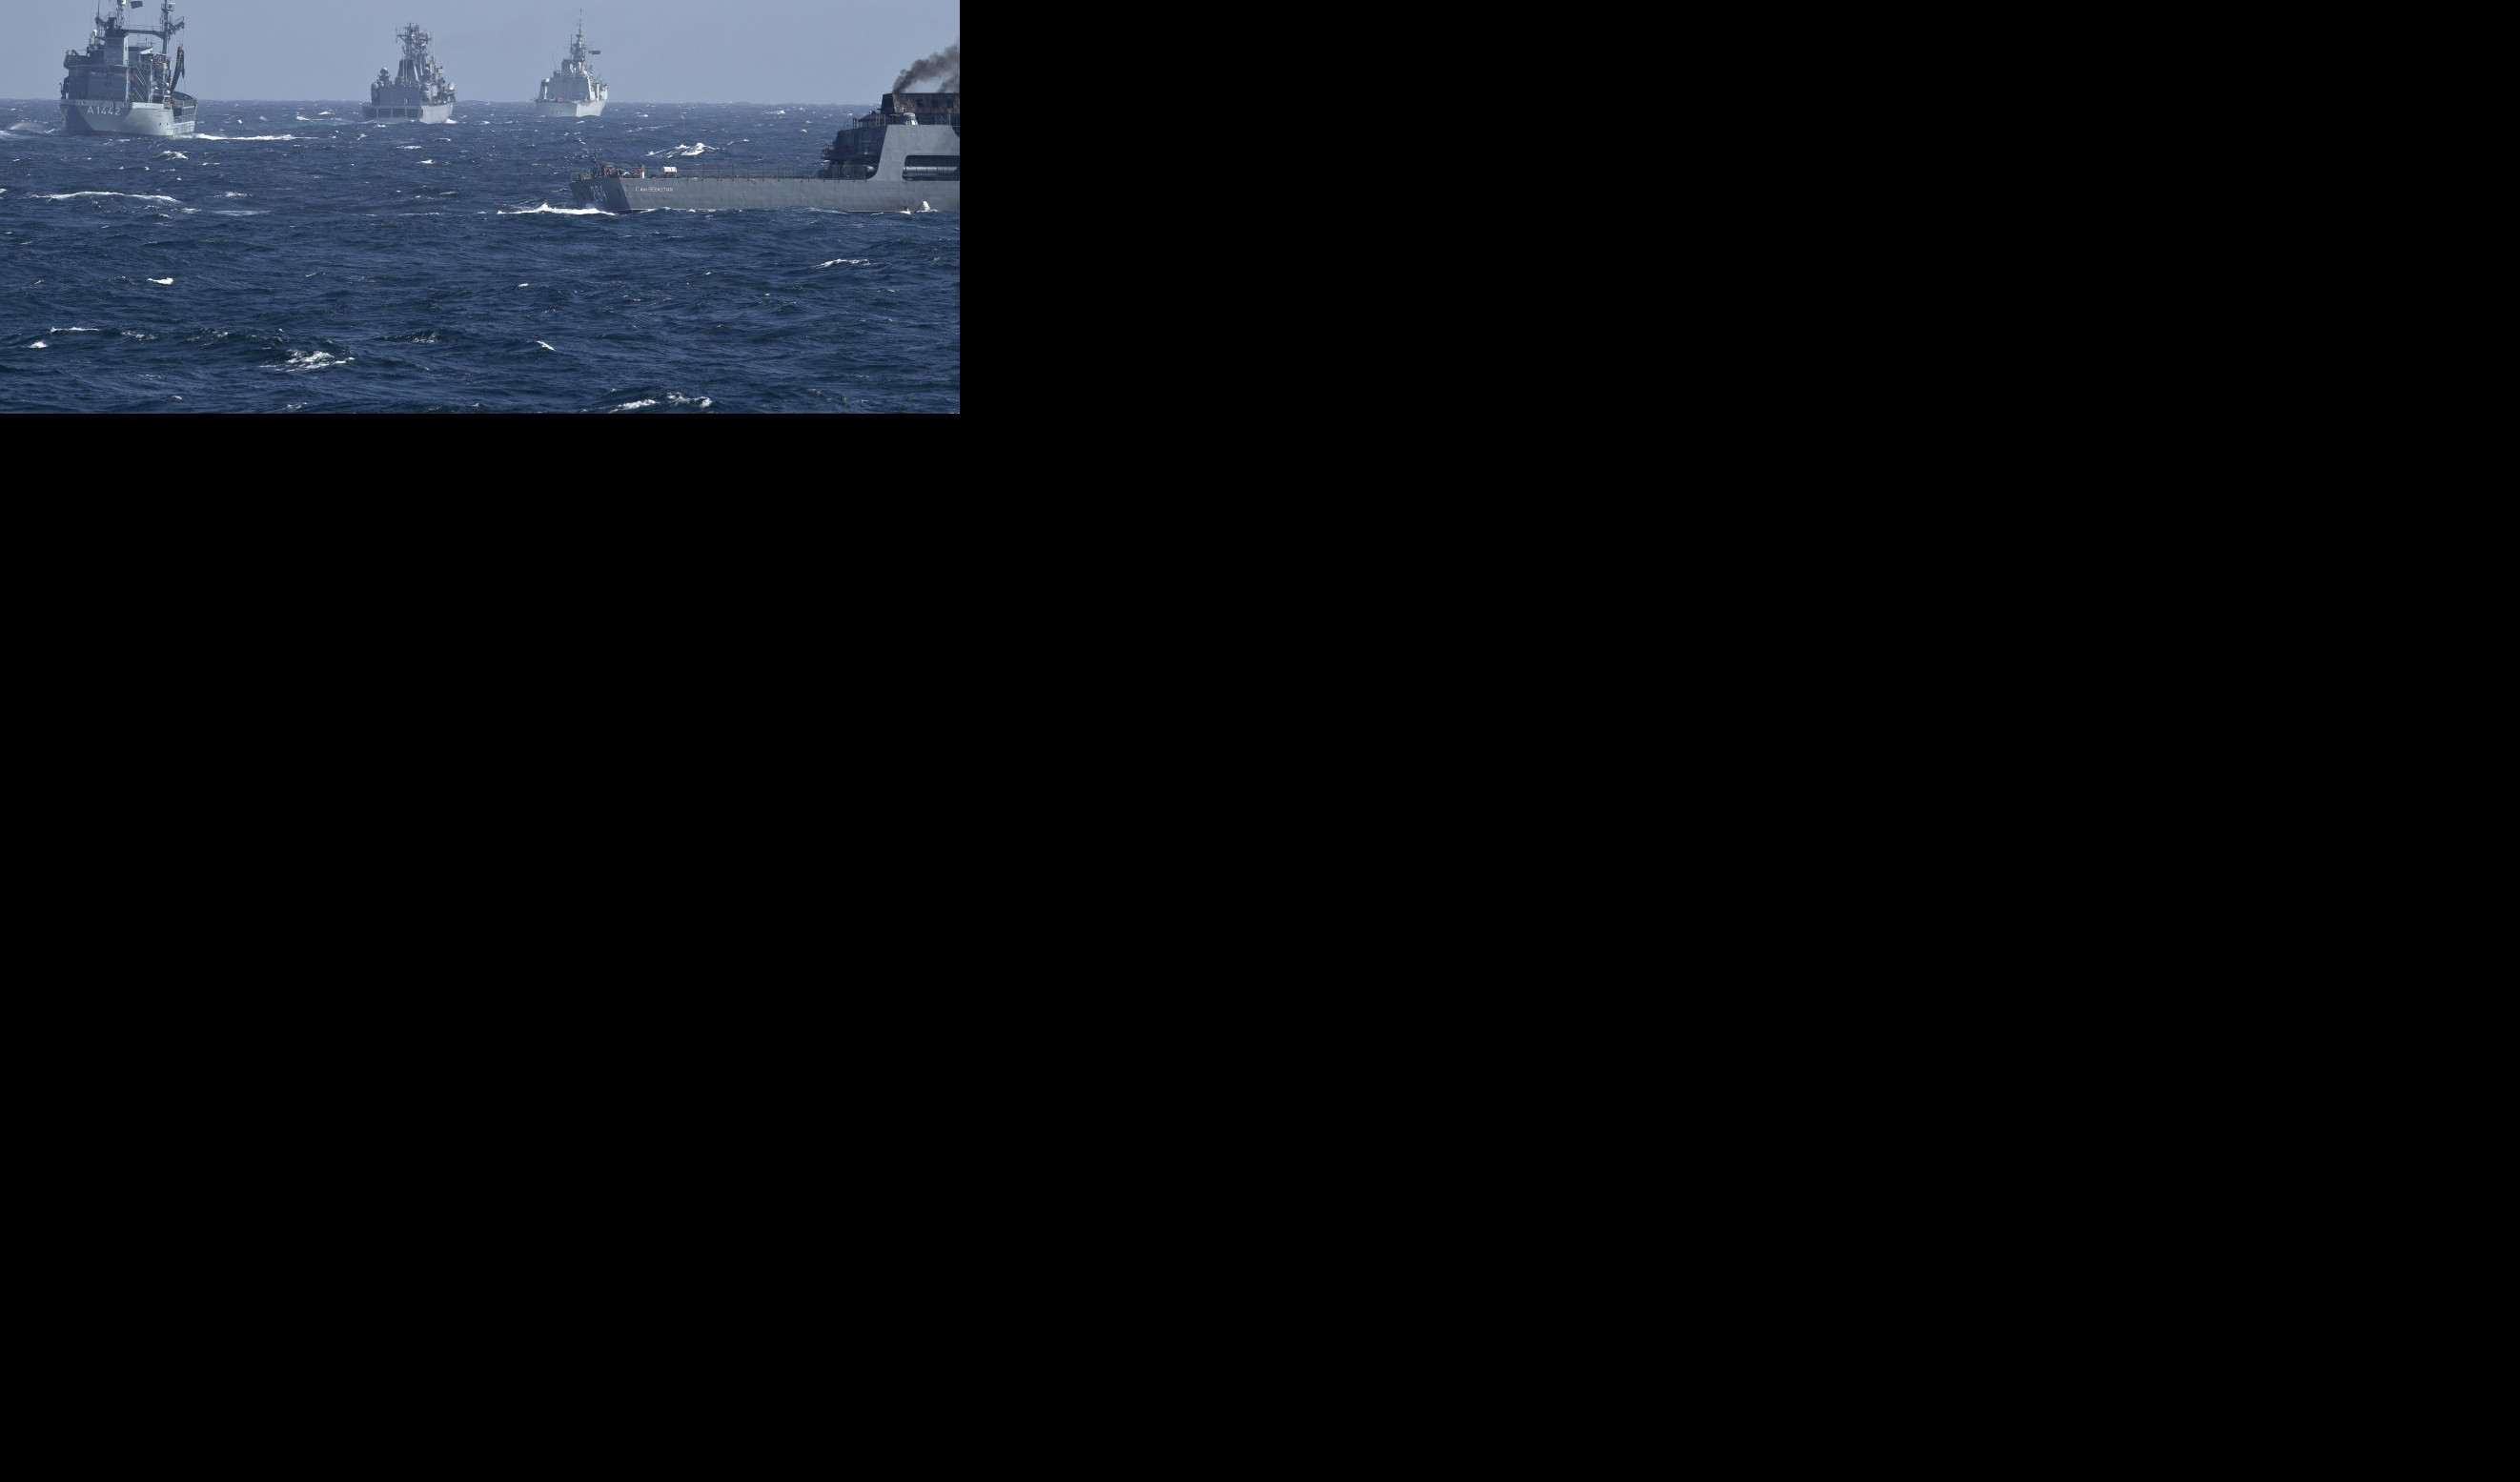 RATNI BRODOVI NATO PLOVE PREMA CRNOM MORU! Dve fregate već prošle kroz Dardanele, iz Konstance krenula još jedna, ŠTA TO NAMERAVA ALIJANSA!